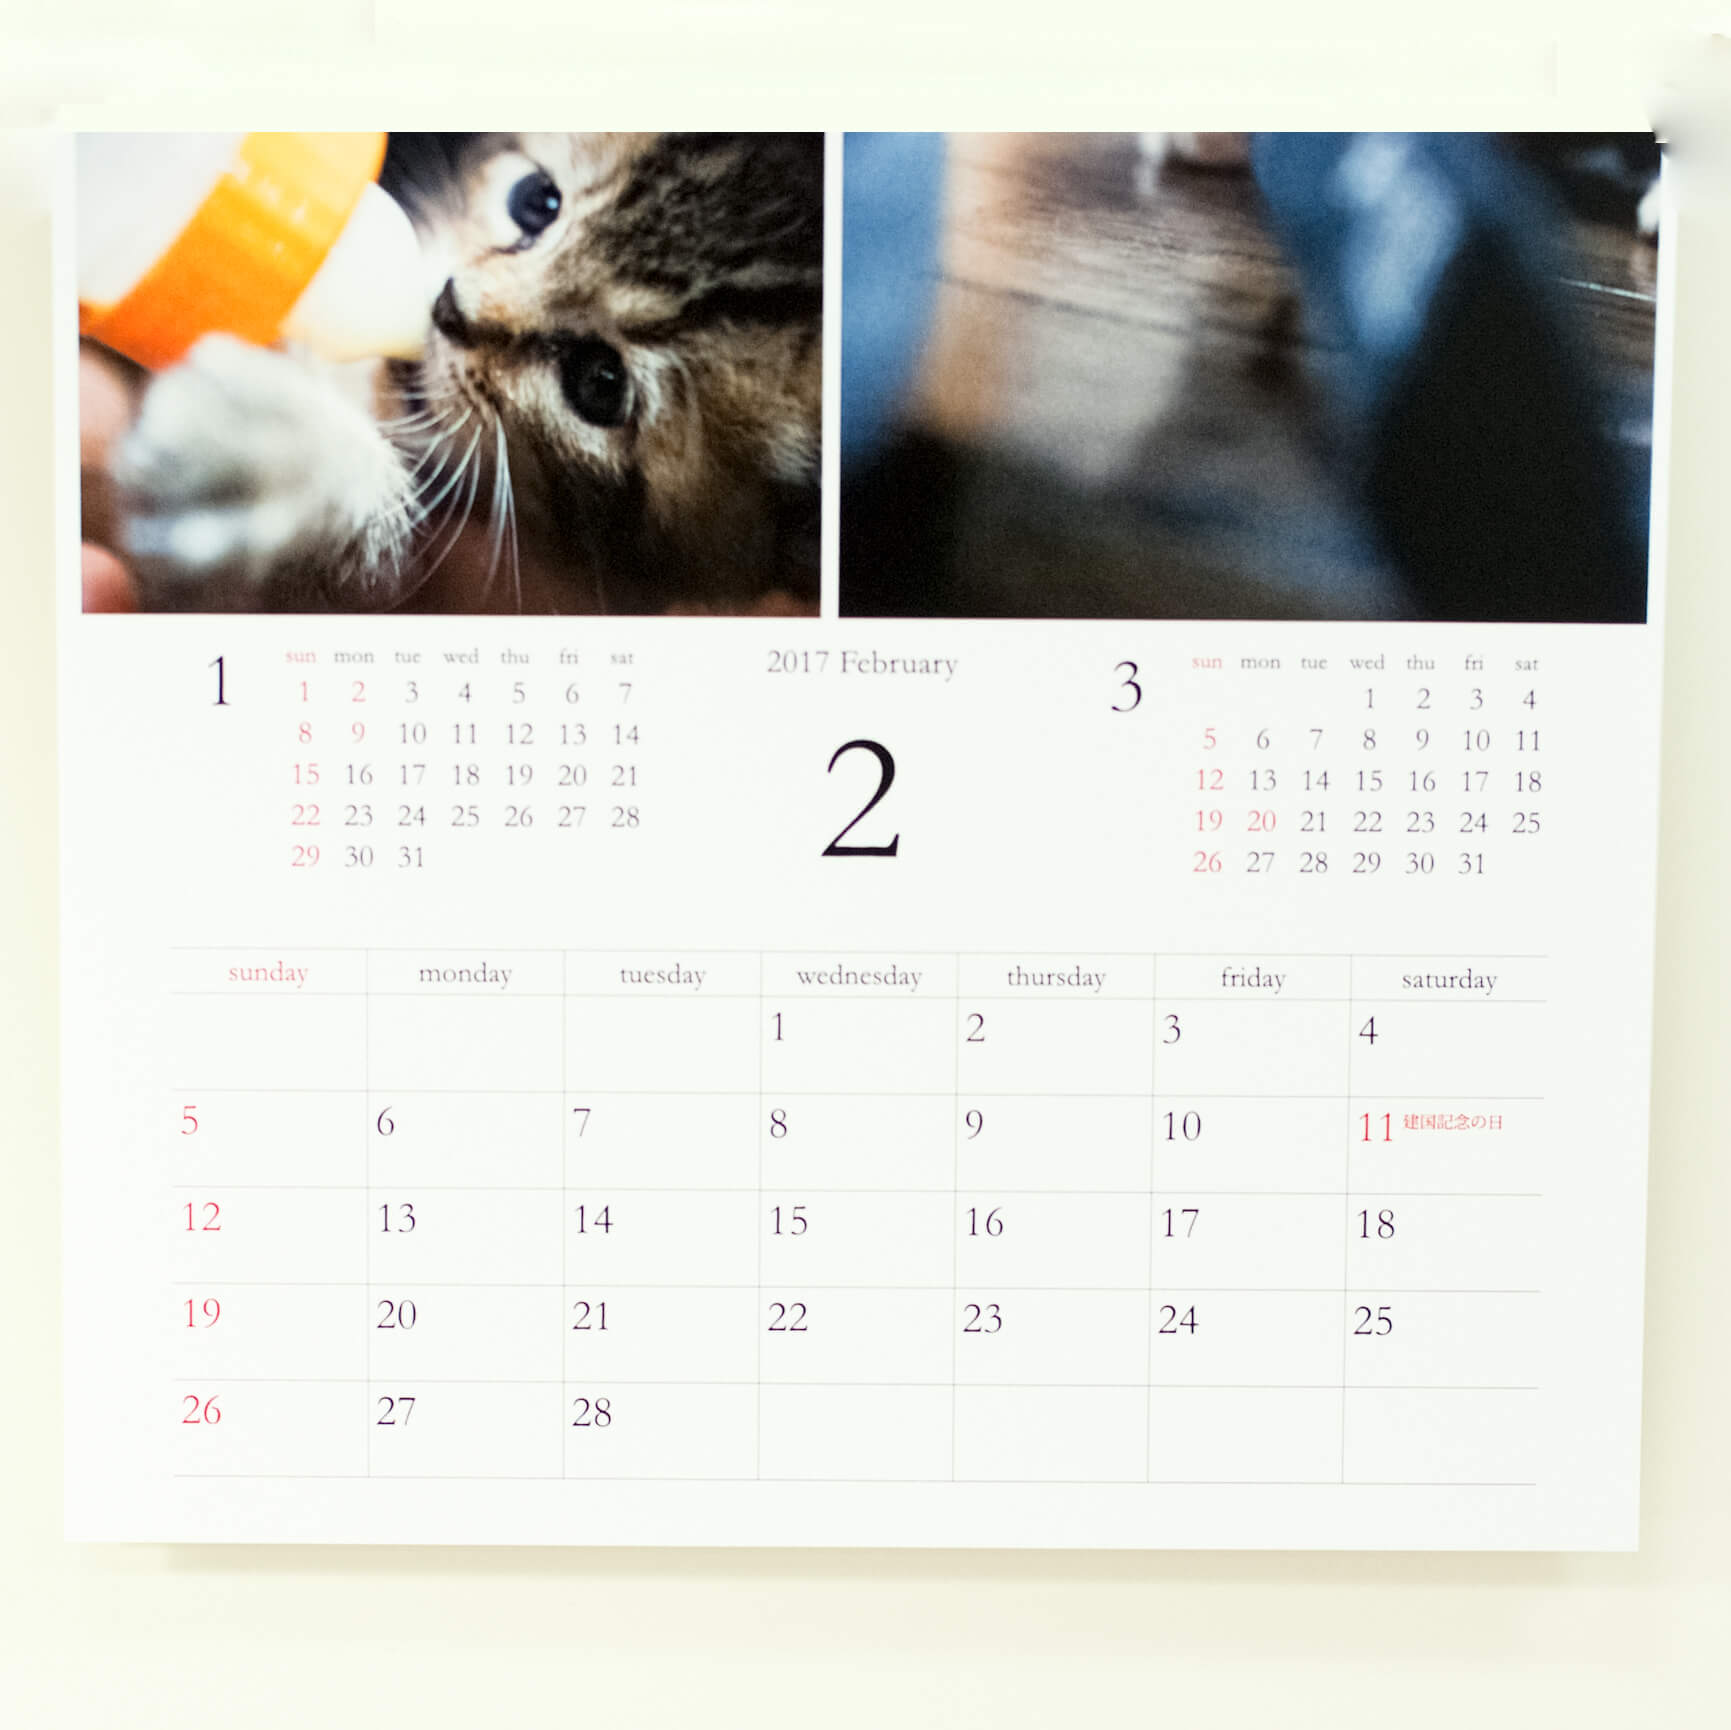 「猫の雑貨屋 もくれん 様」製作のオリジナルカレンダー ギャラリー写真2